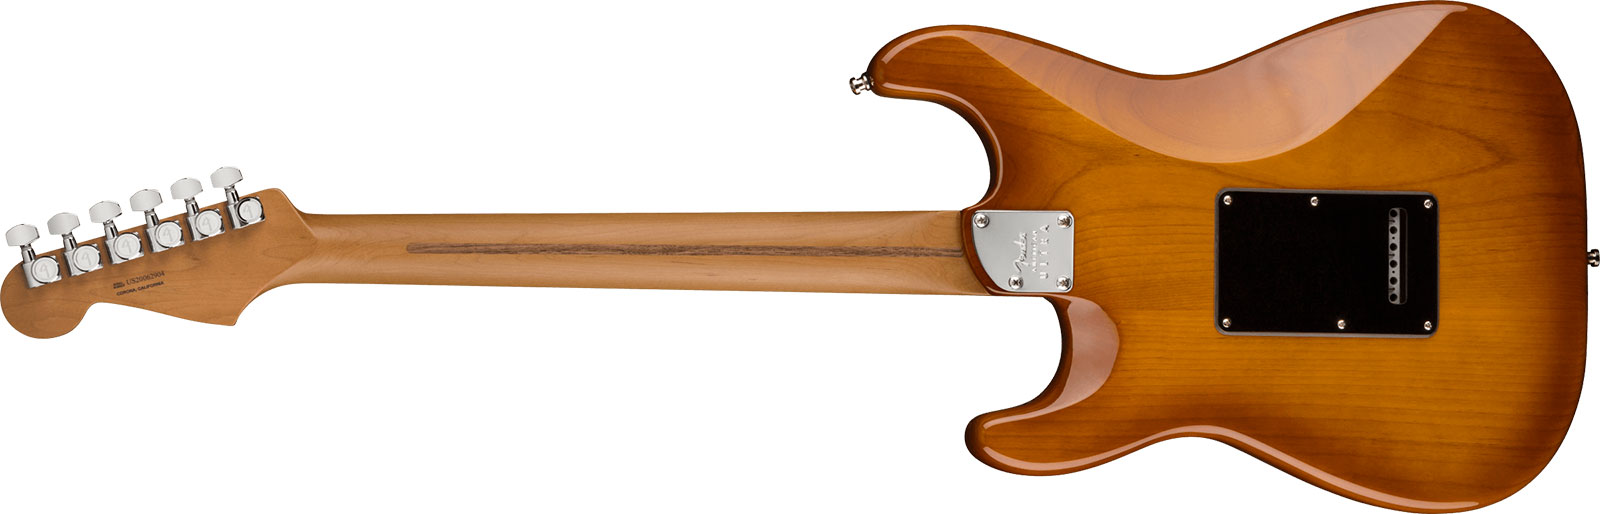 Fender Strat American Ultra Roasted Fretboard Ltd Usa 3s Trem Mn - Honey Burst - Guitare Électrique Forme Str - Variation 1